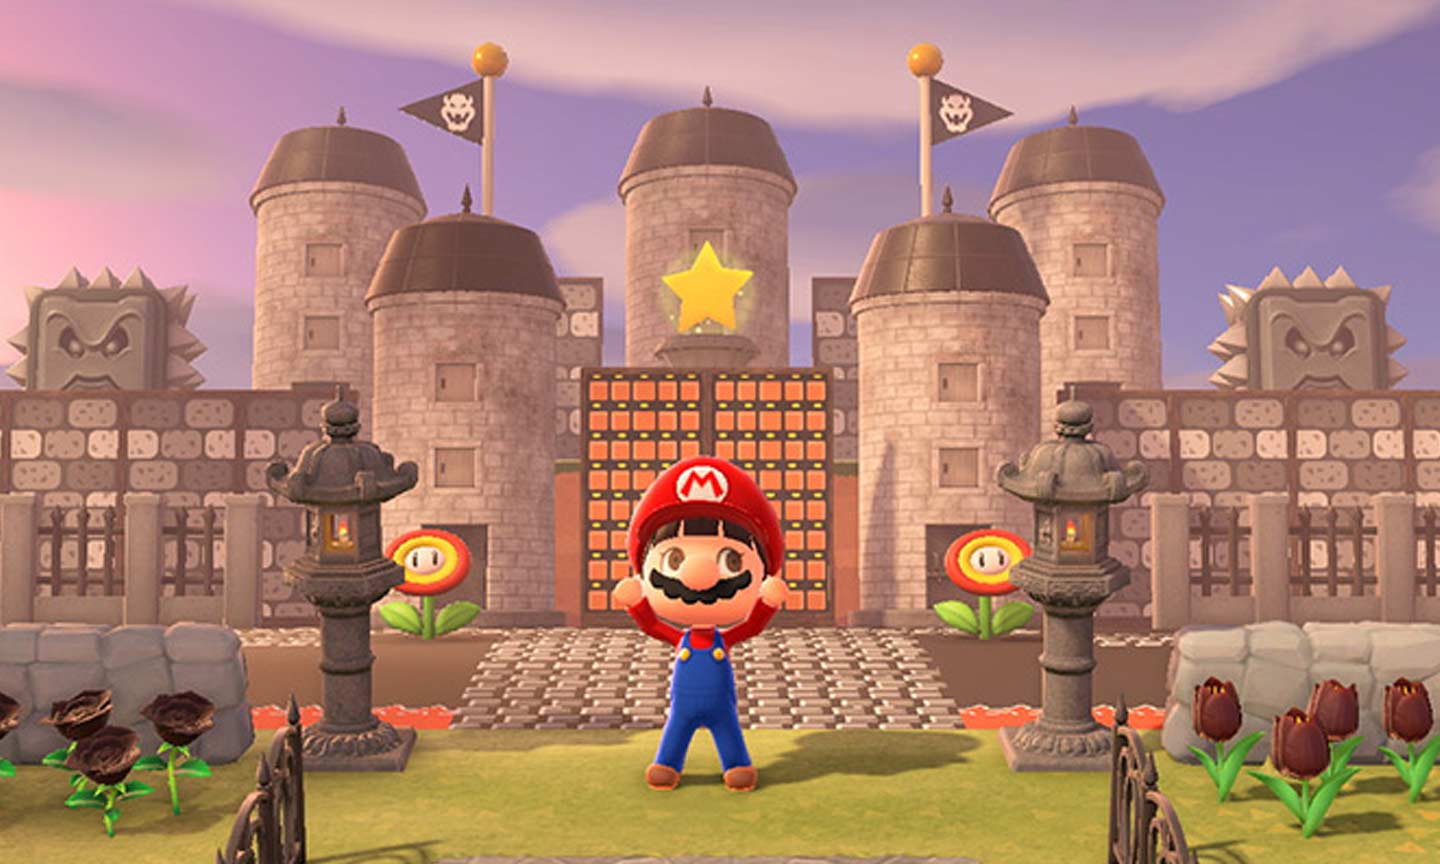 Recrean el Castillo de Bowser en Animal Crossing: New Horizons